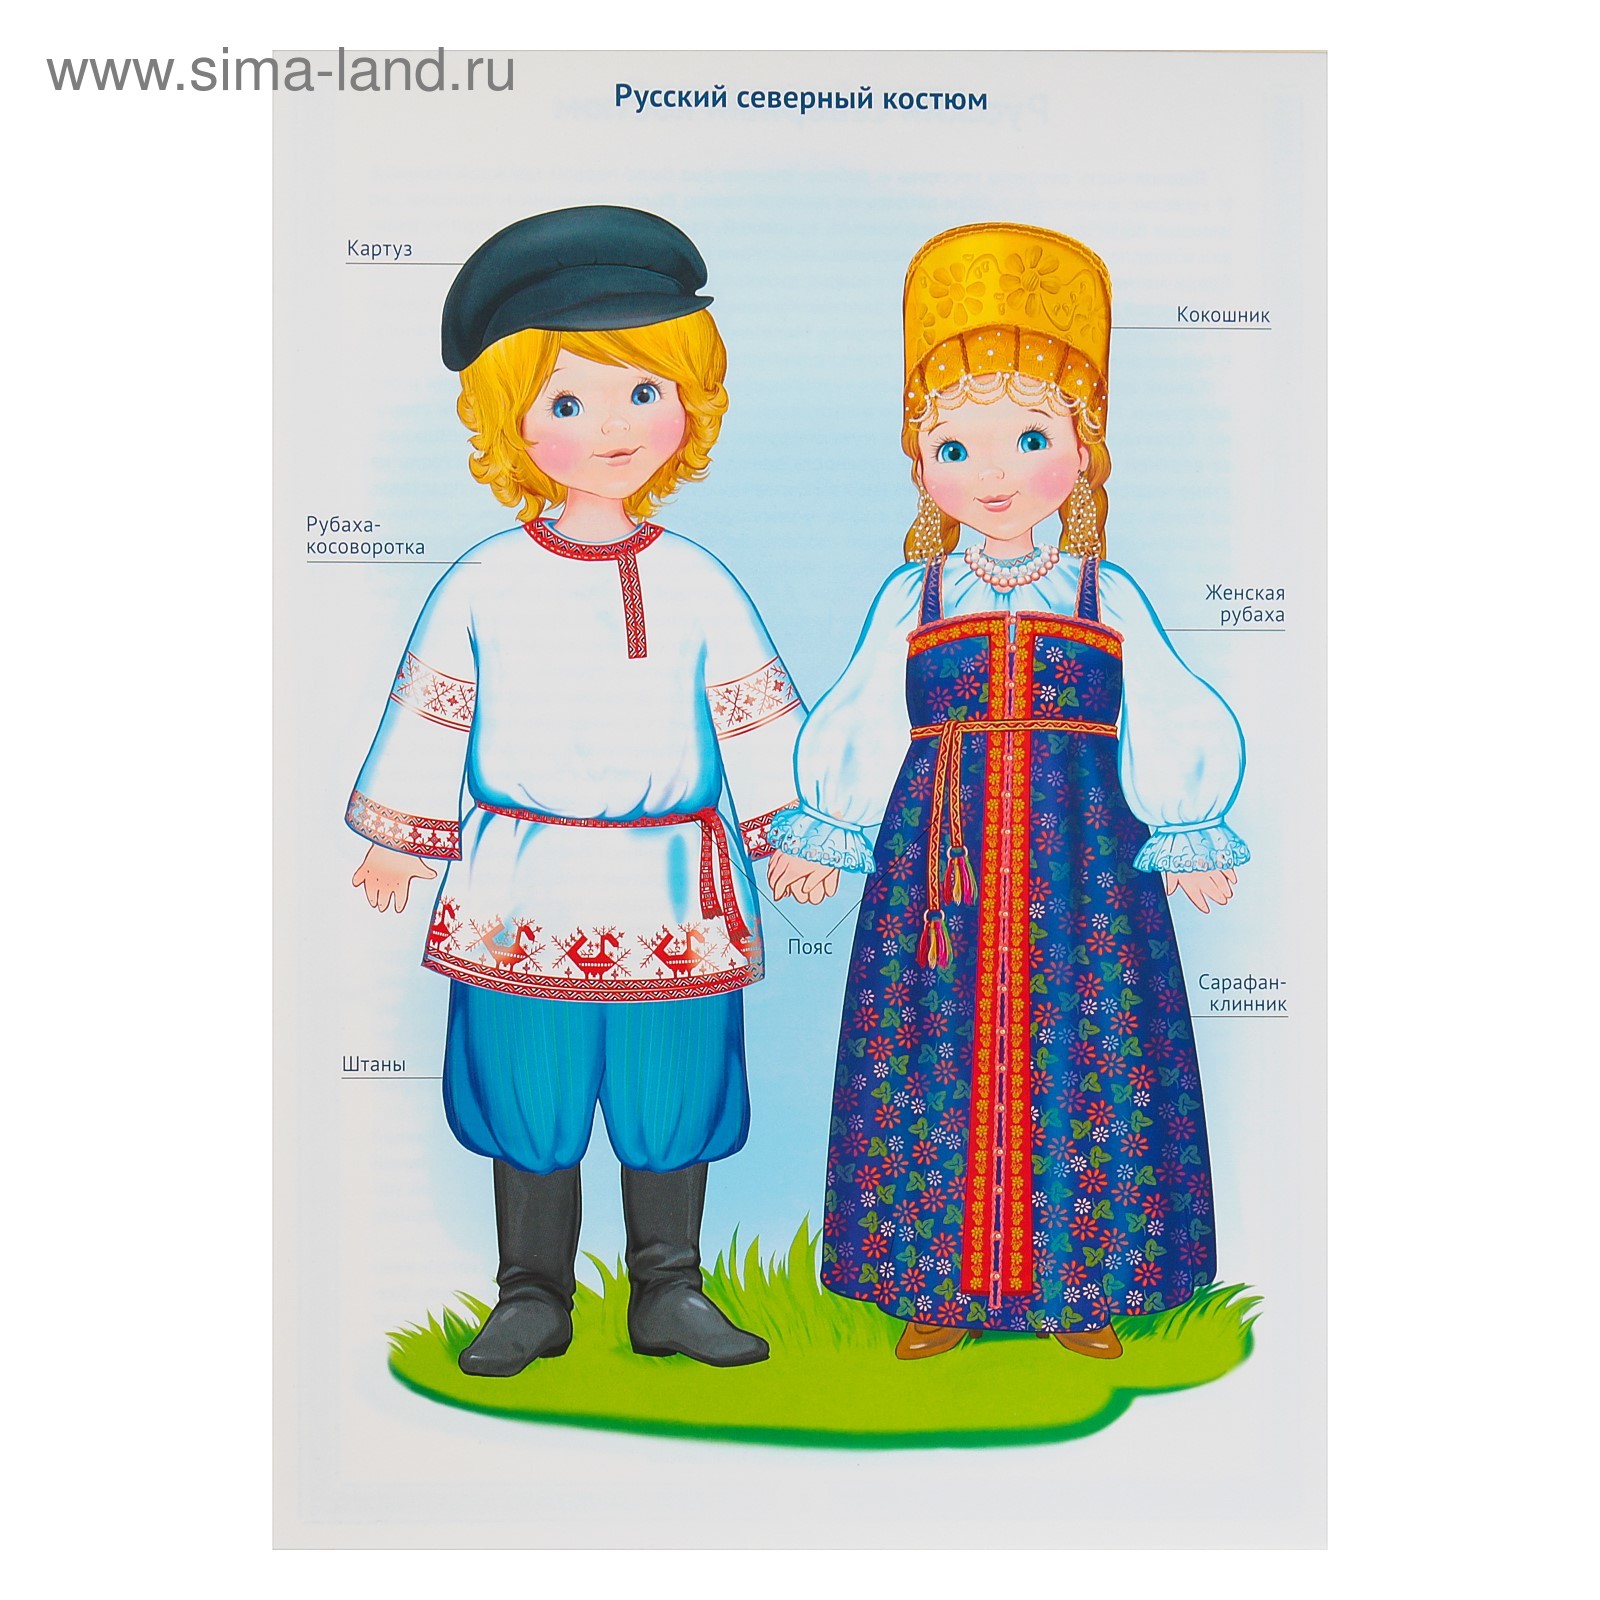 Национальные костюмы народов России для детей